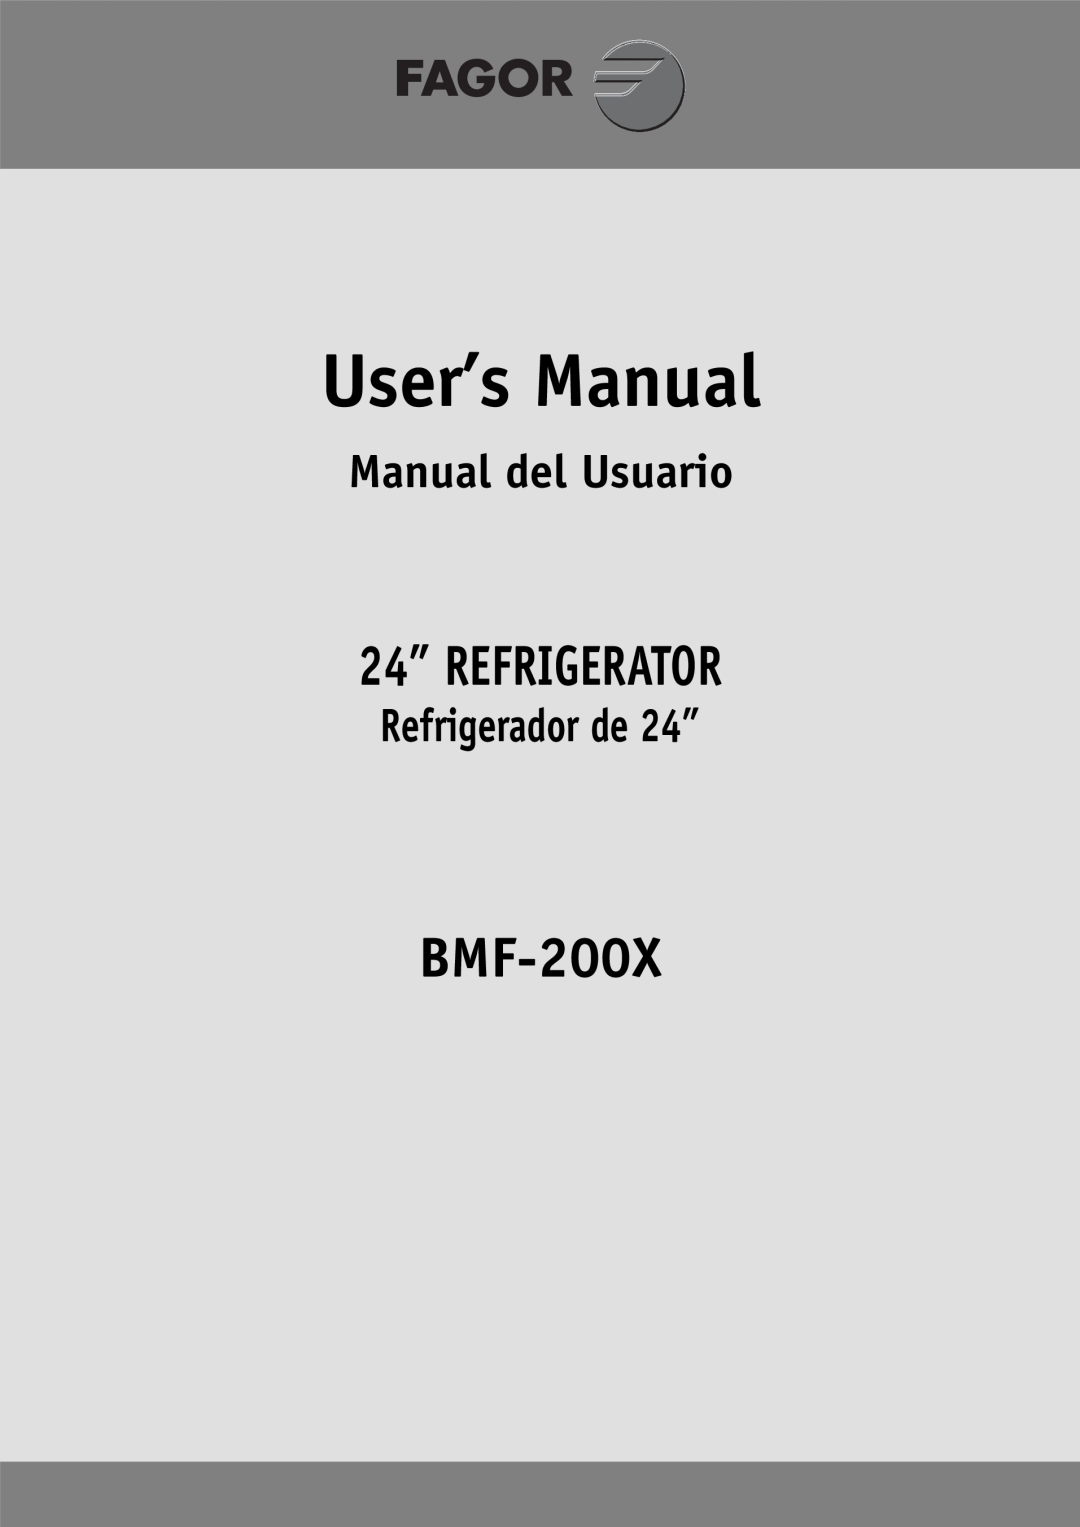 Fagor America BMF-200X manual 24” REFRIGERATOR, Manual del Usuario, Refrigerador de 24” 